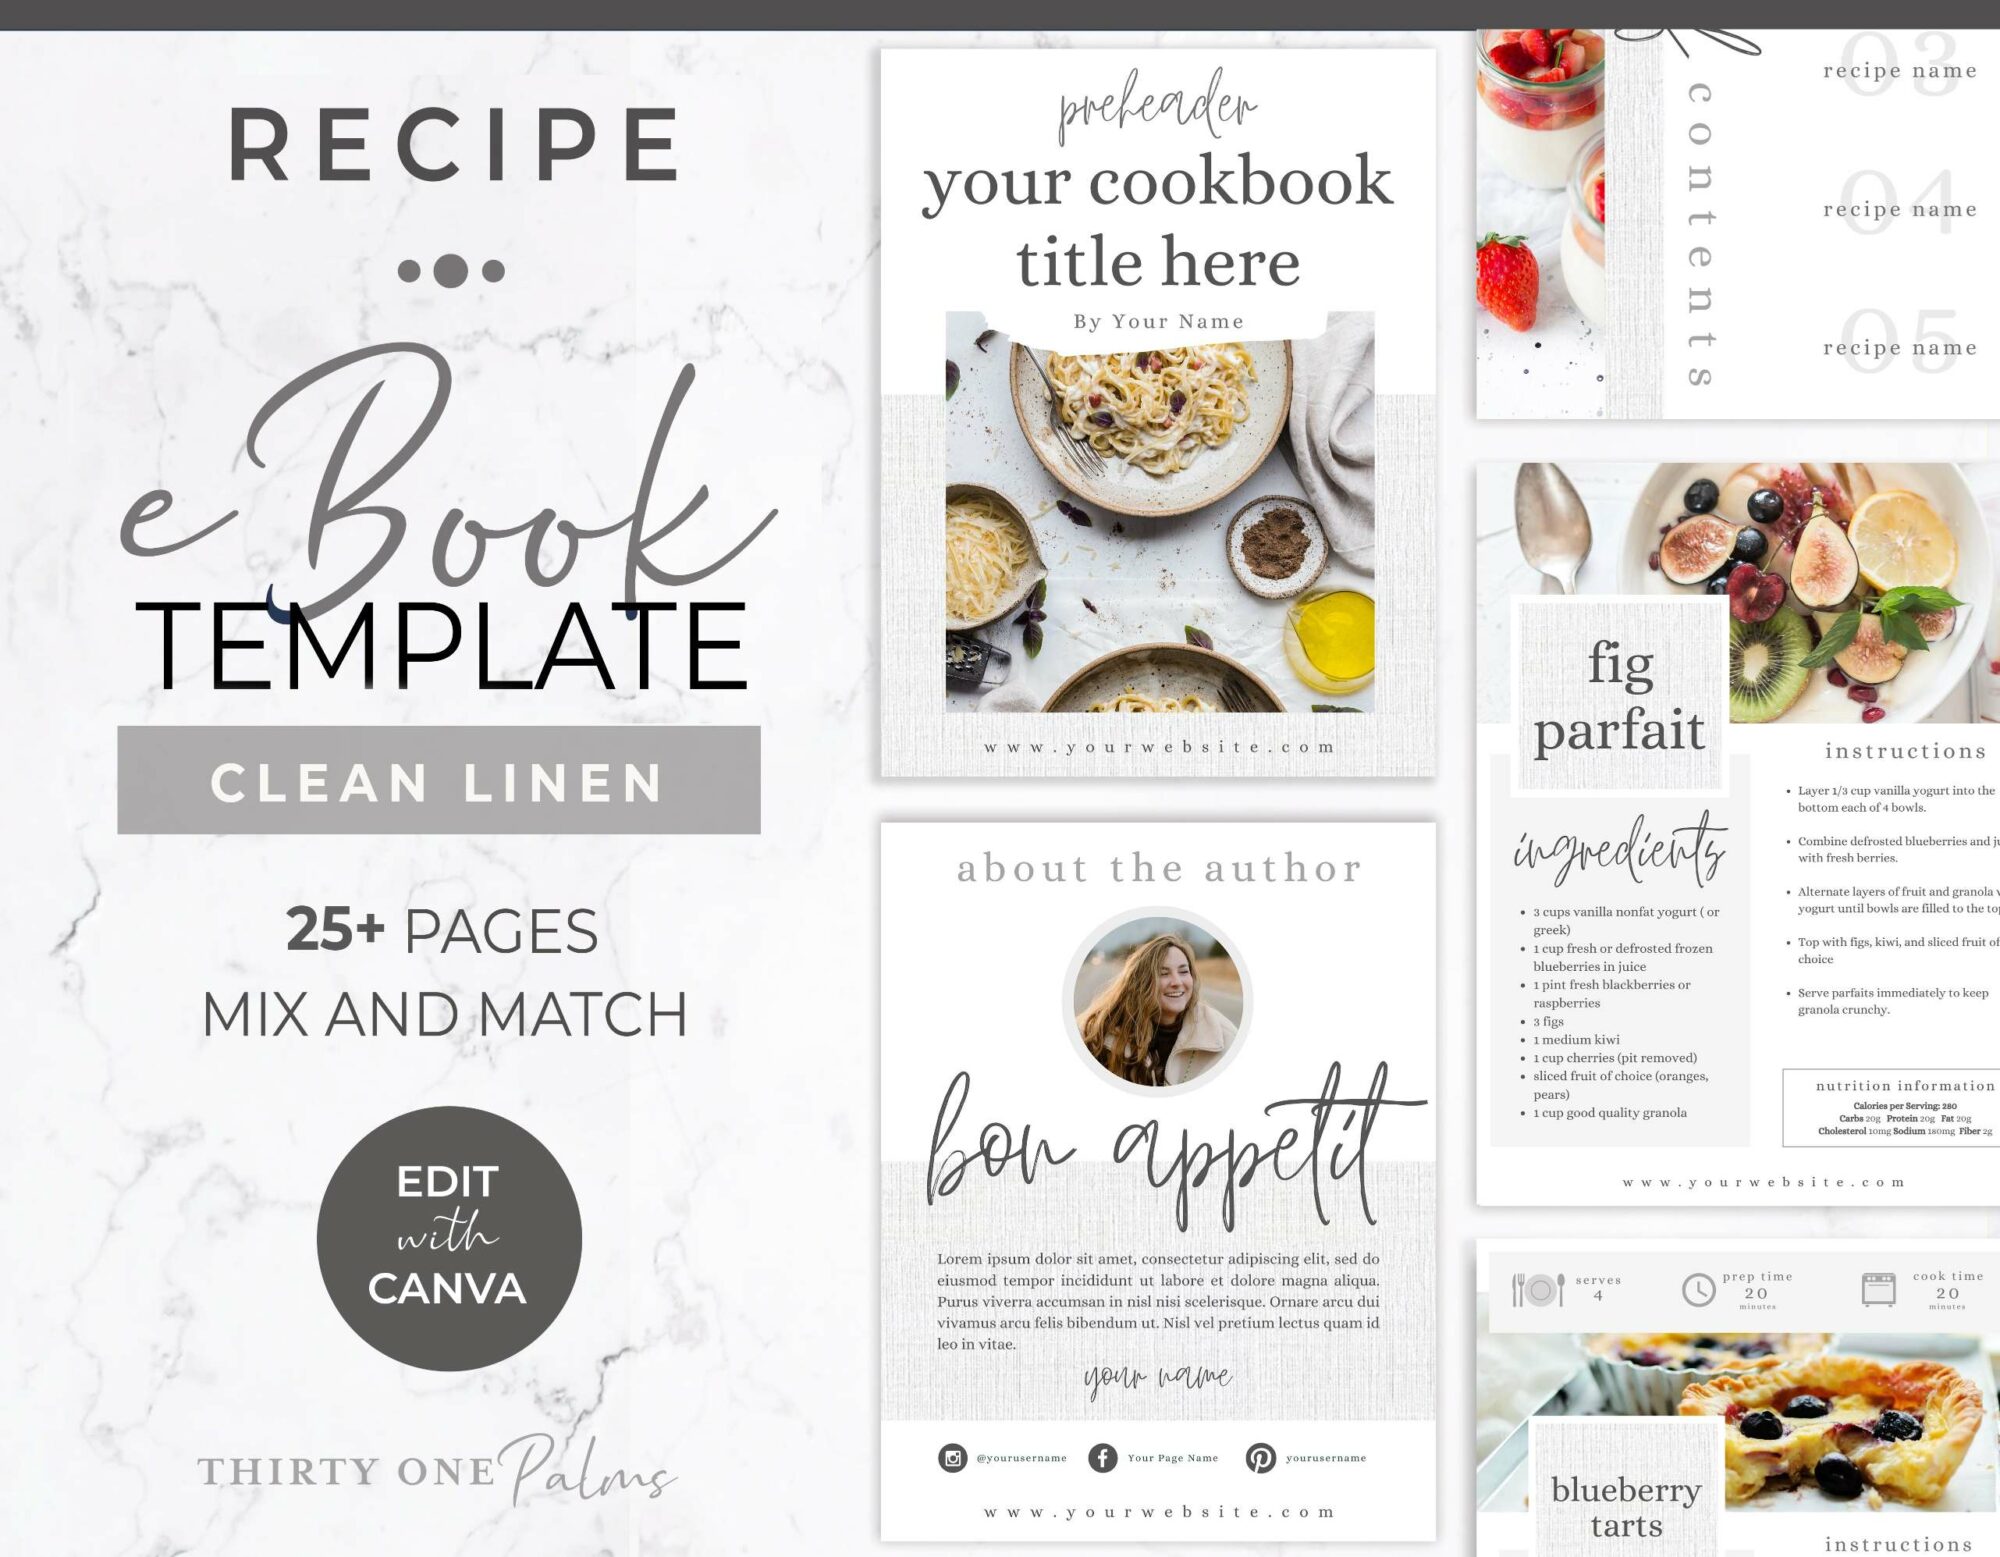 Recipe eBook Template for Canva – White Linen